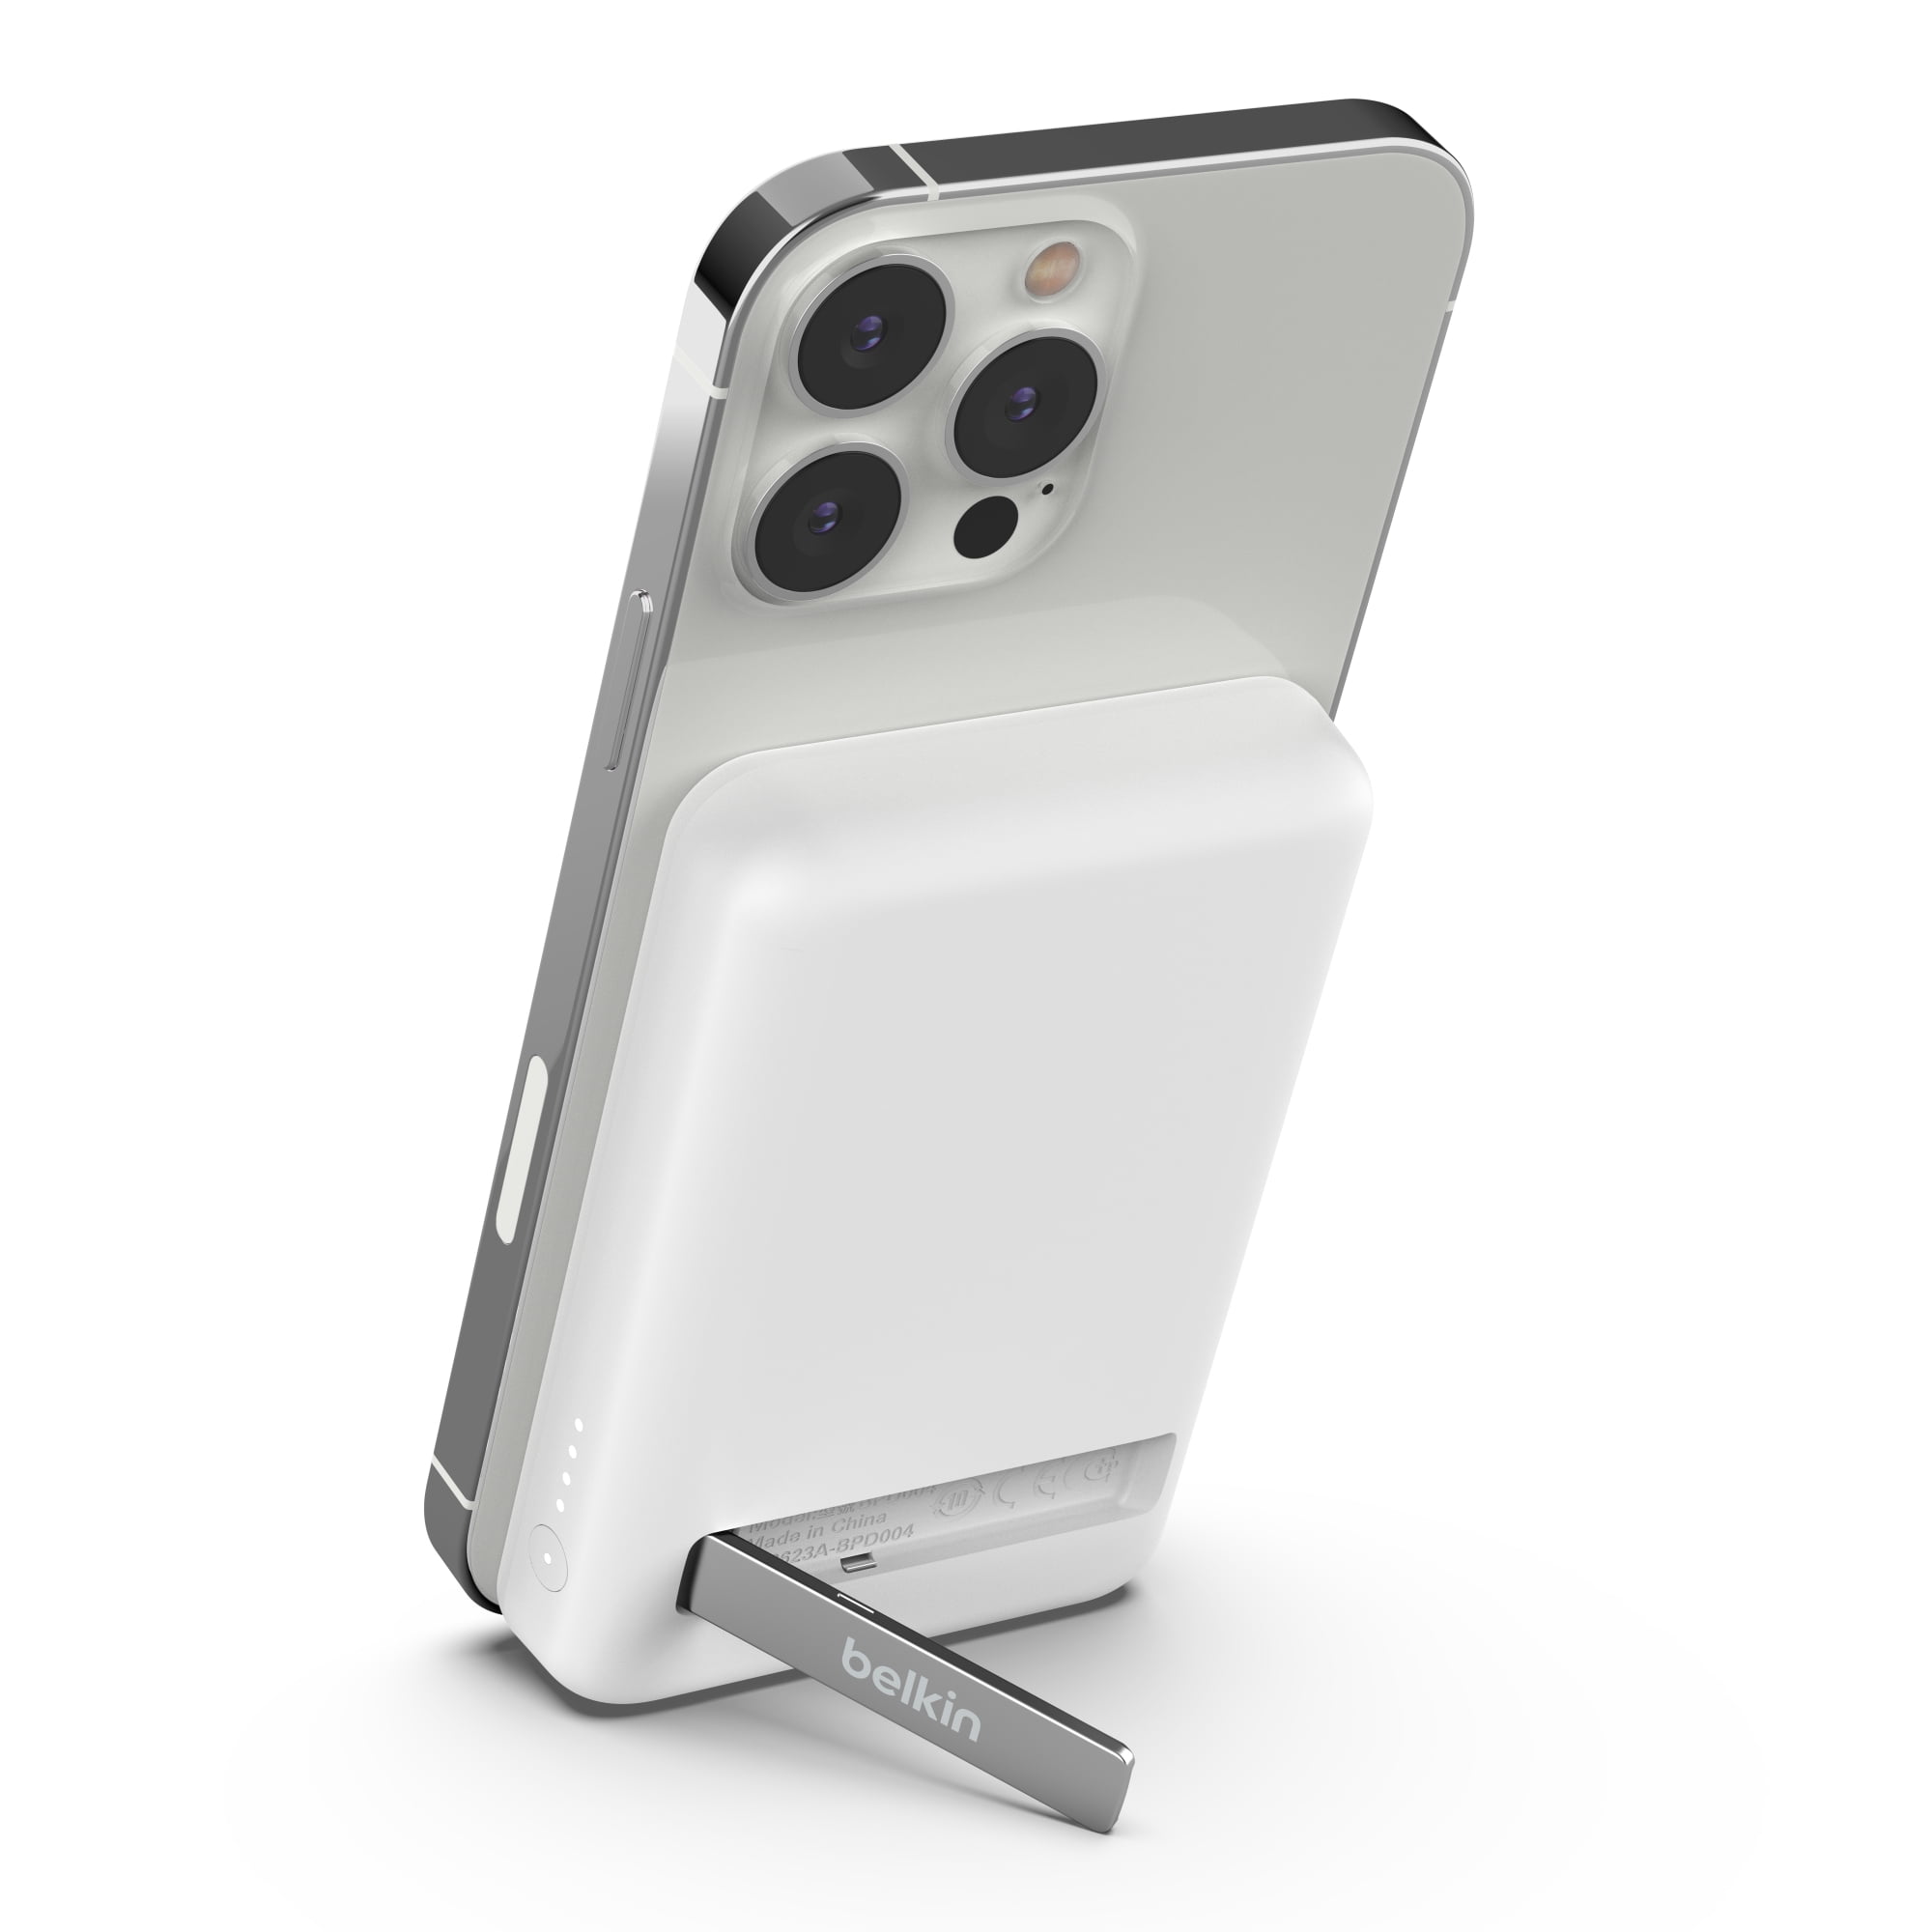 Batería MagSafe de Apple VS power bank Belkin BoostCharge MagSafe 10K:  características, diferencias y precios